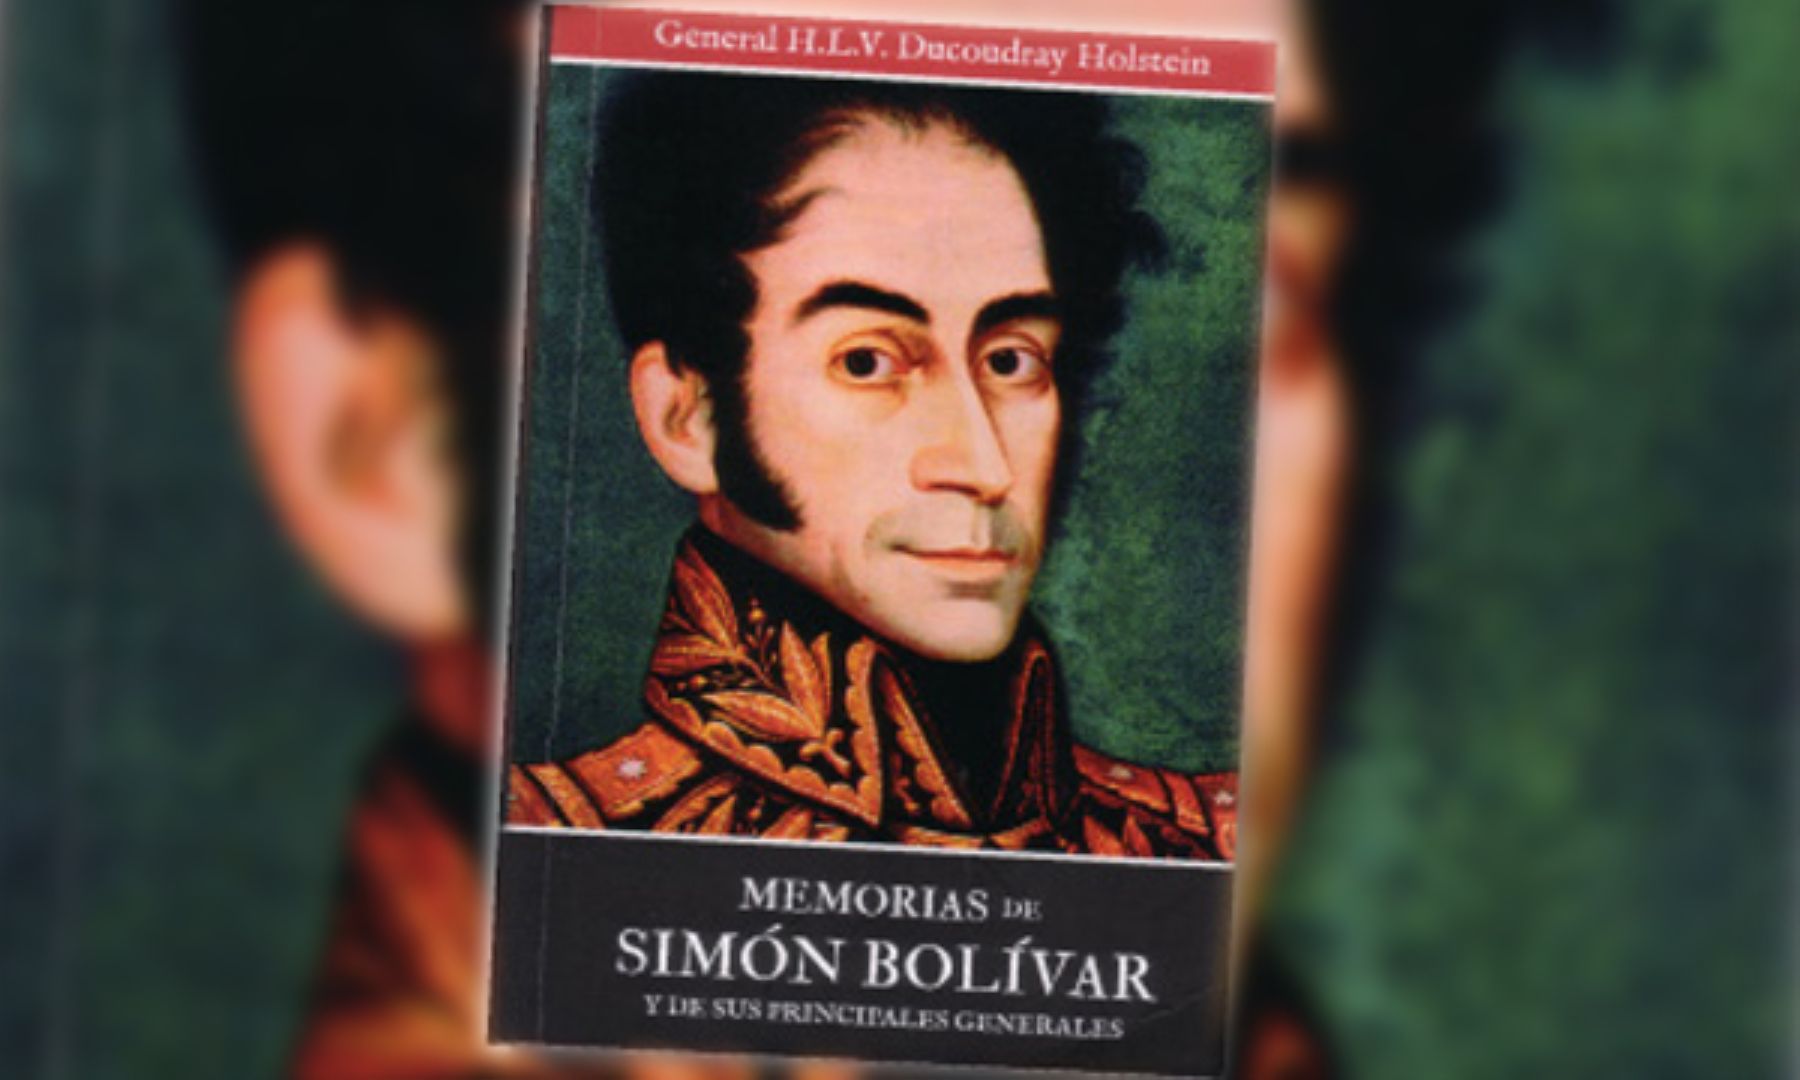 Libro Memorias de Simón Bolívar y de sus principales generales, escrito en 1823, recién se edita en español.